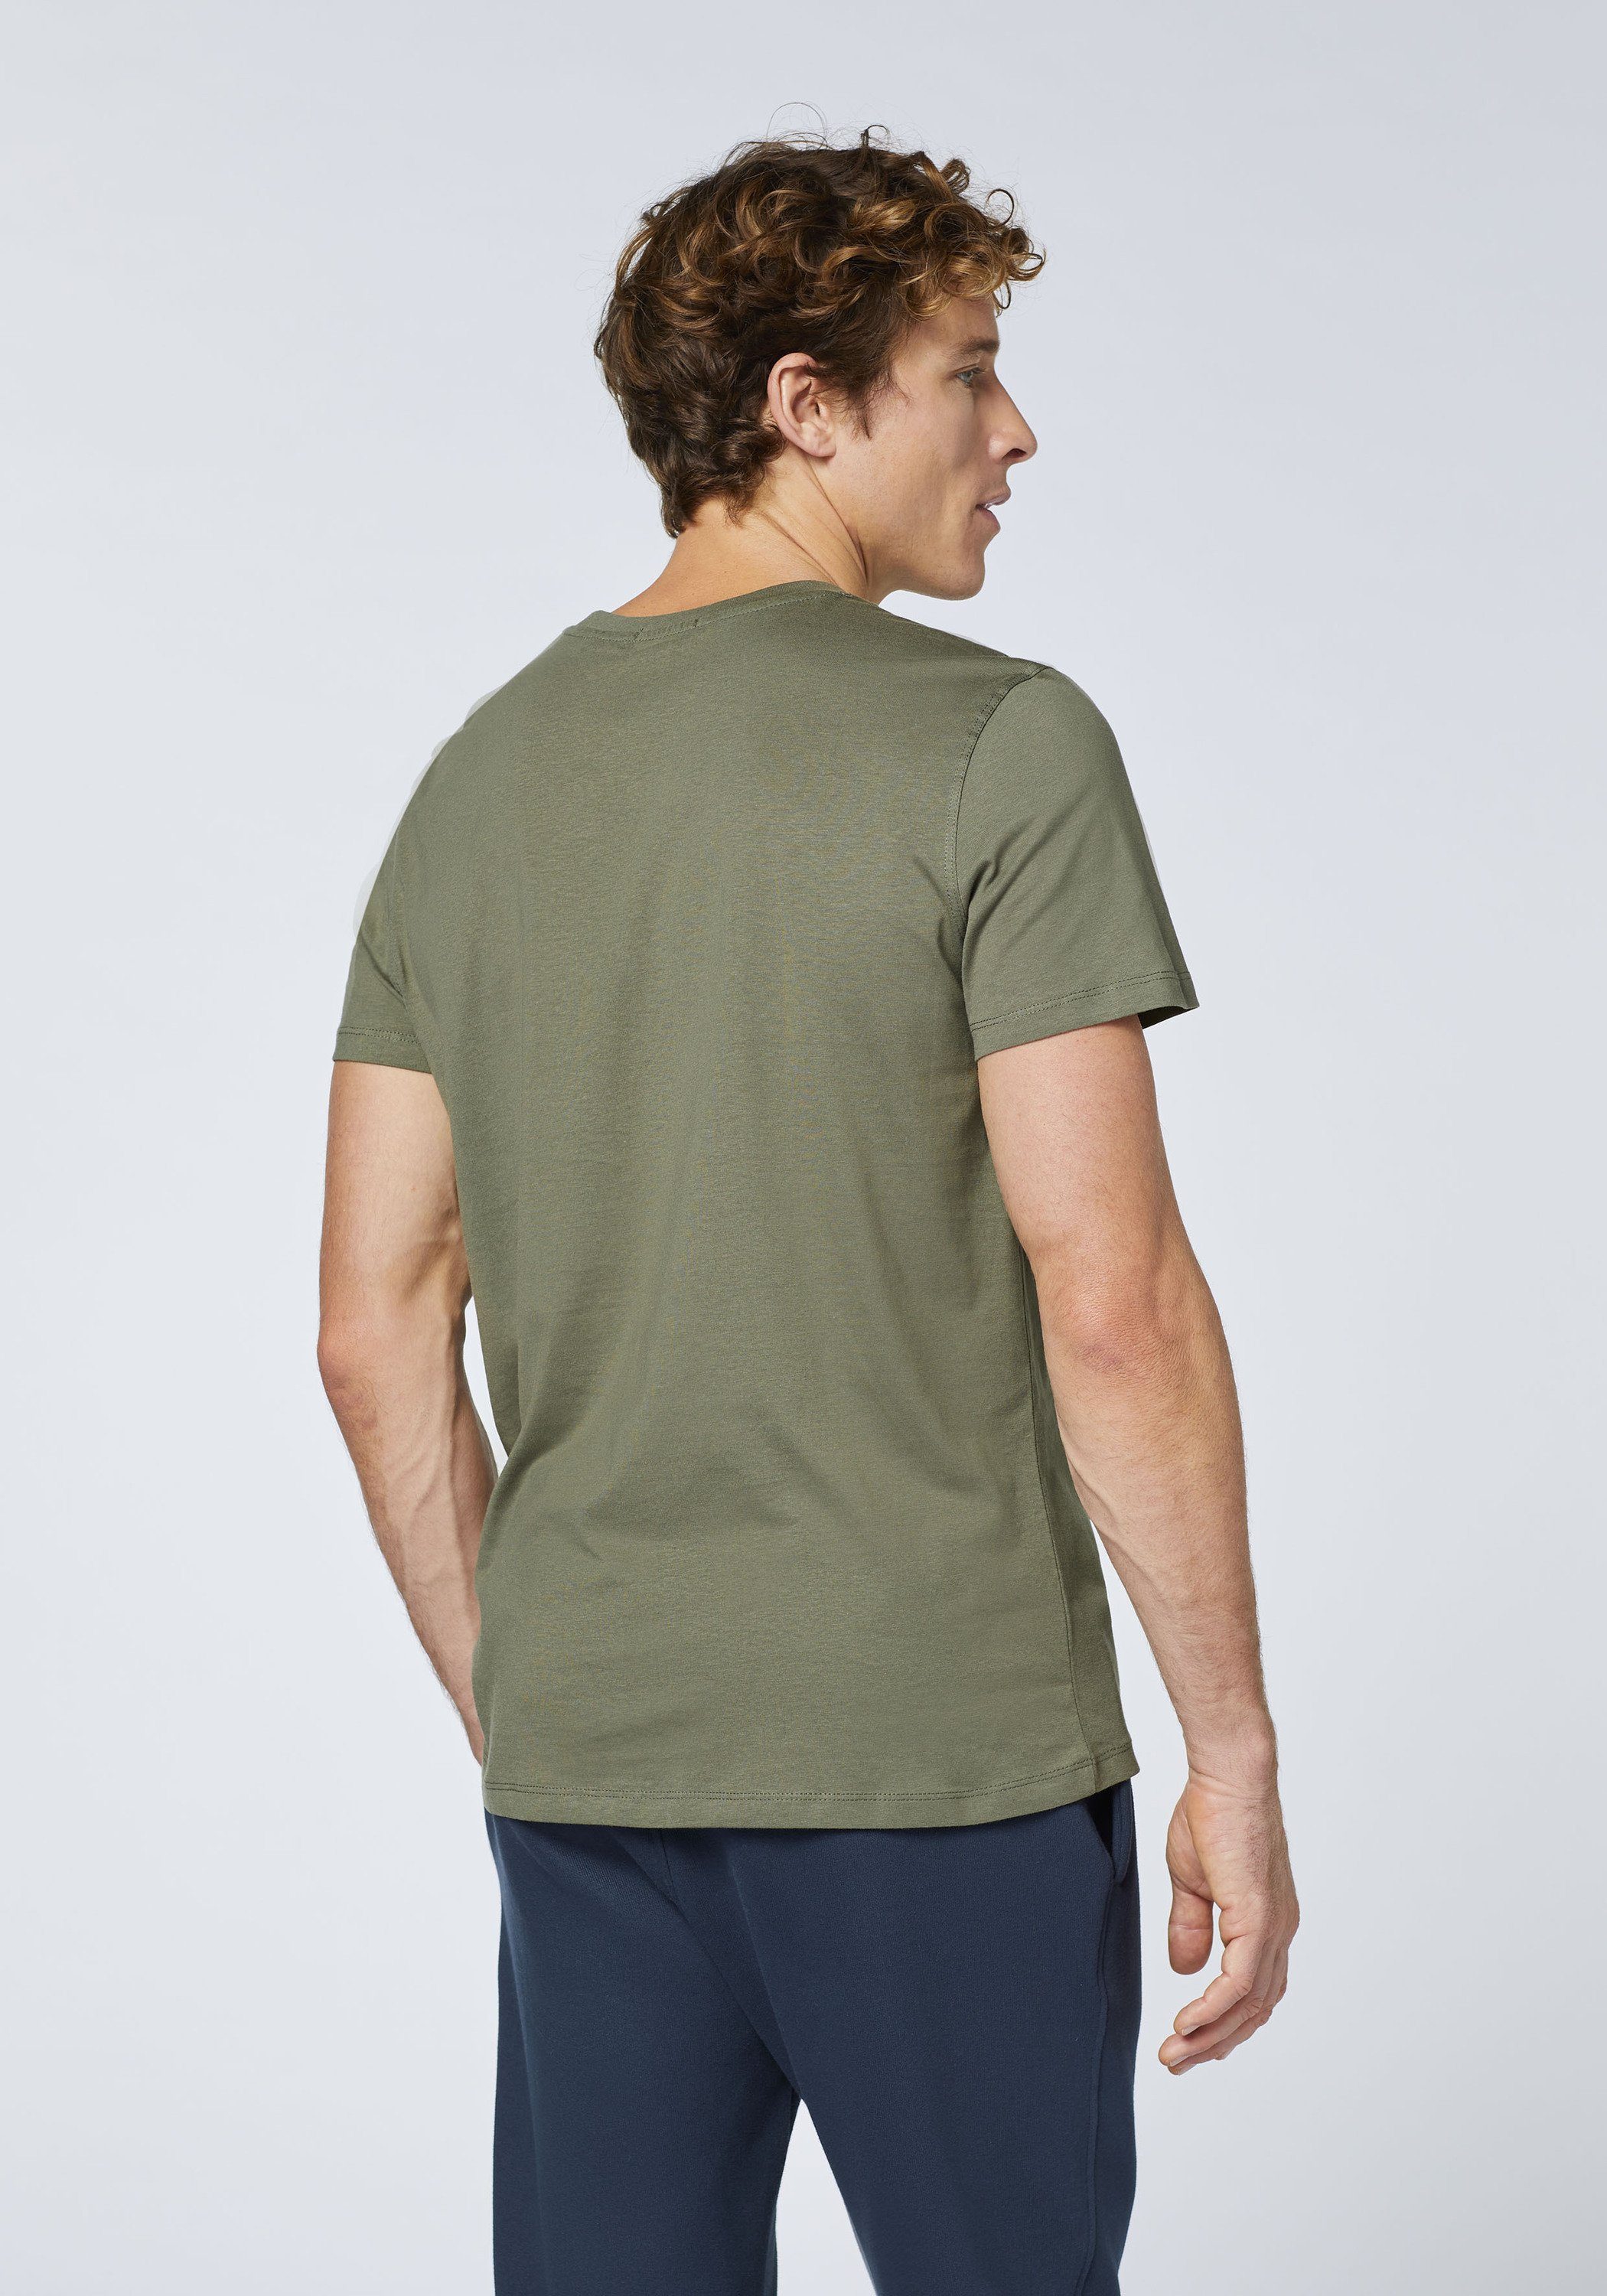 Chiemsee Print-Shirt T-Shirt Olive 1 18-0515 Label-Schriftzug Dusty mit